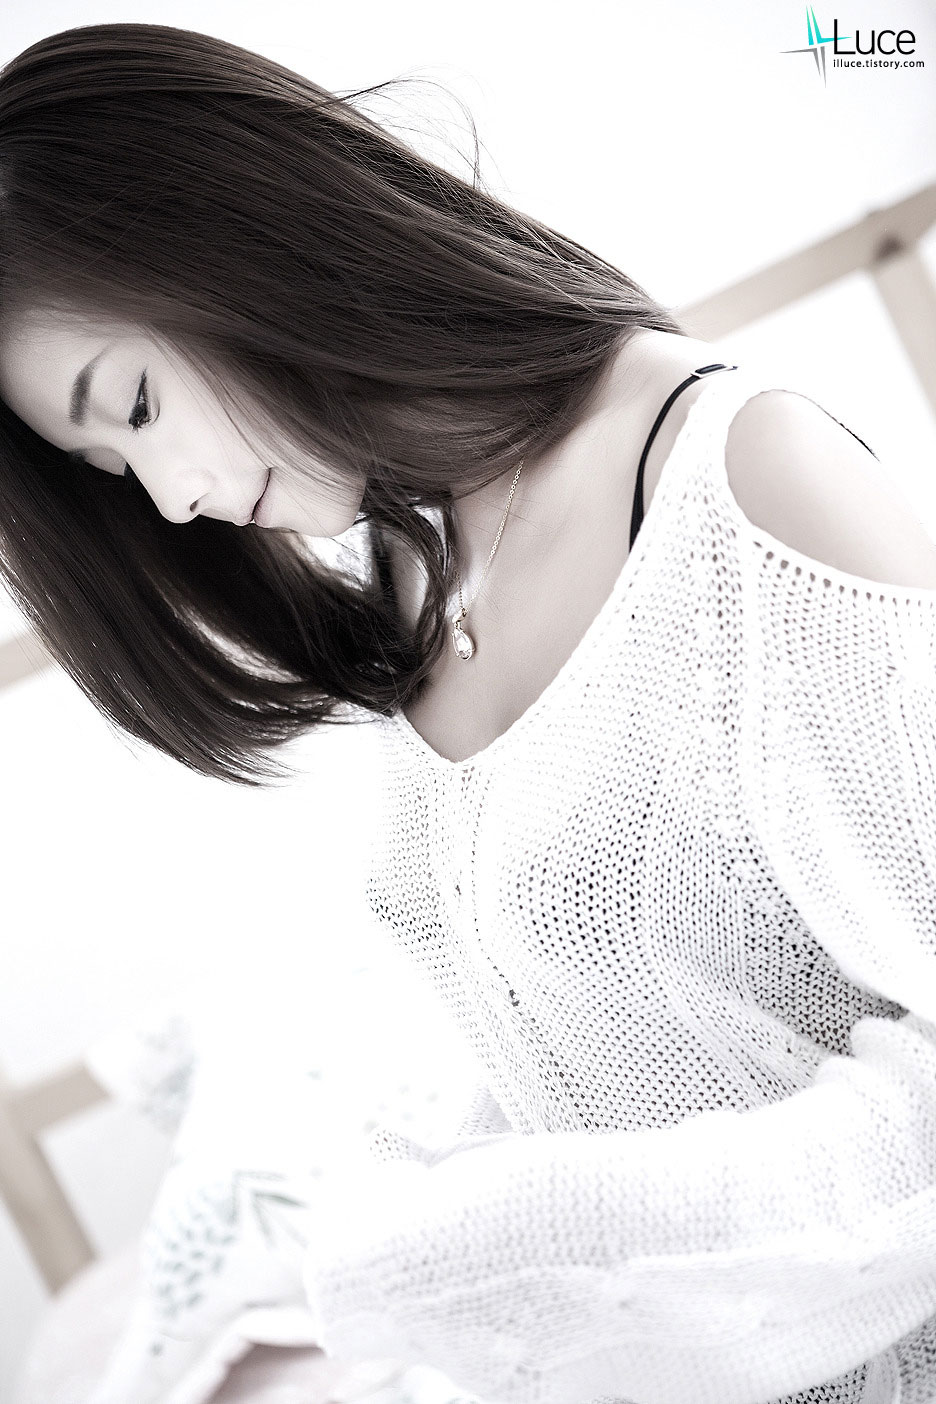 Model Kim Ha Yul studio photoshoot